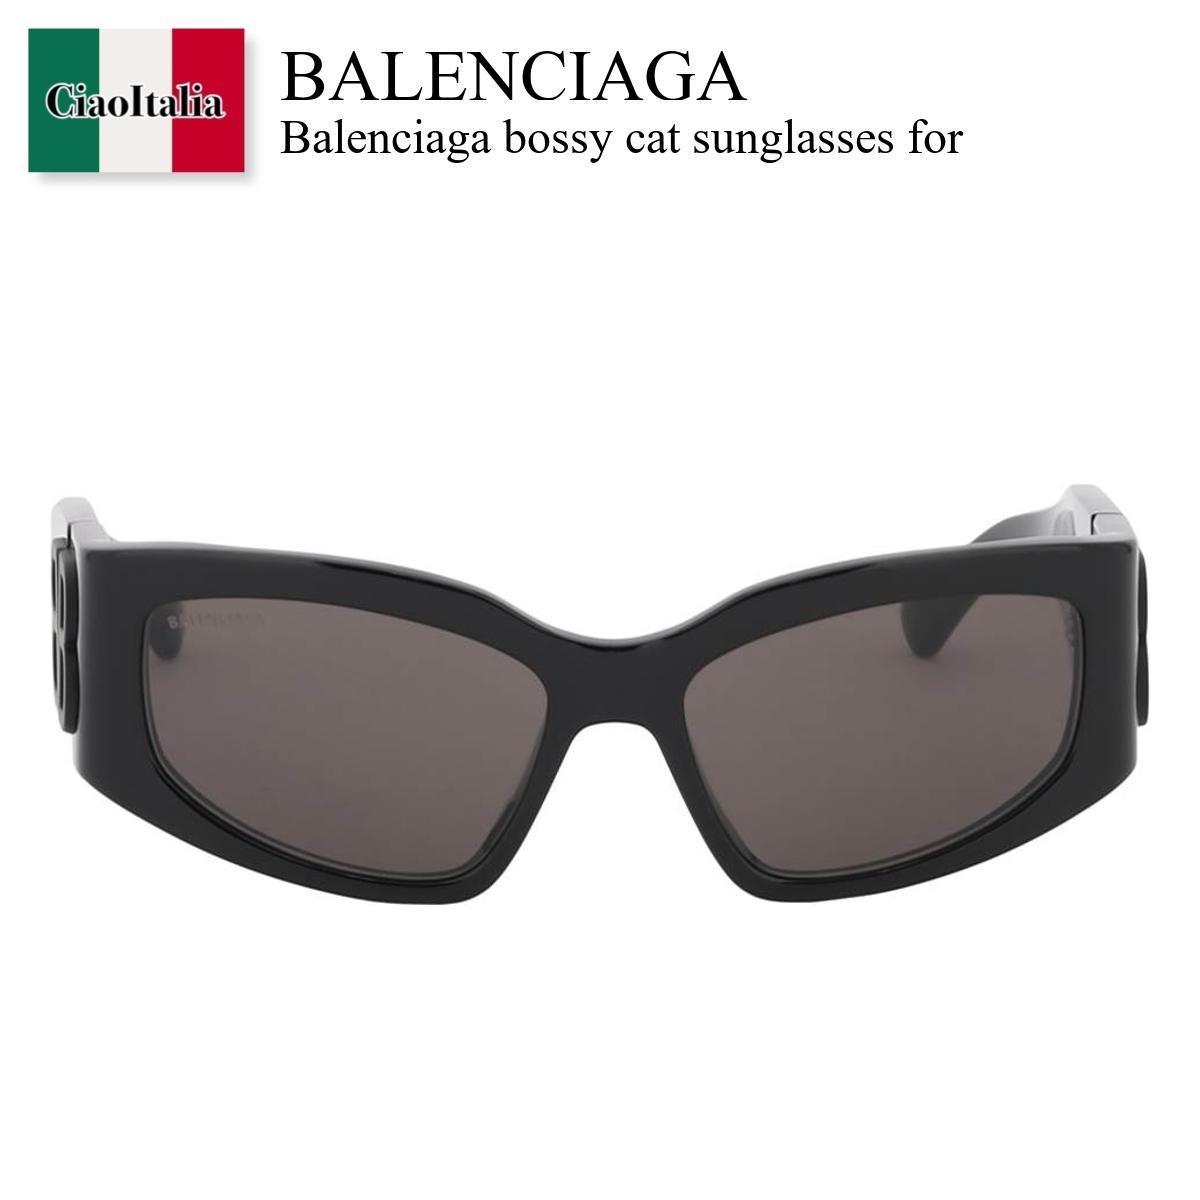 バレンシアガ サングラス レディース バレンシアガ / Balenciaga Bossy Cat Sunglasses For / 773492 T0039 / 773492 T0039 6020B / 773492T00396020B / 773492T0039 / サングラス / 「正規品補償」「VIP価格販売」「お買い物サポート」